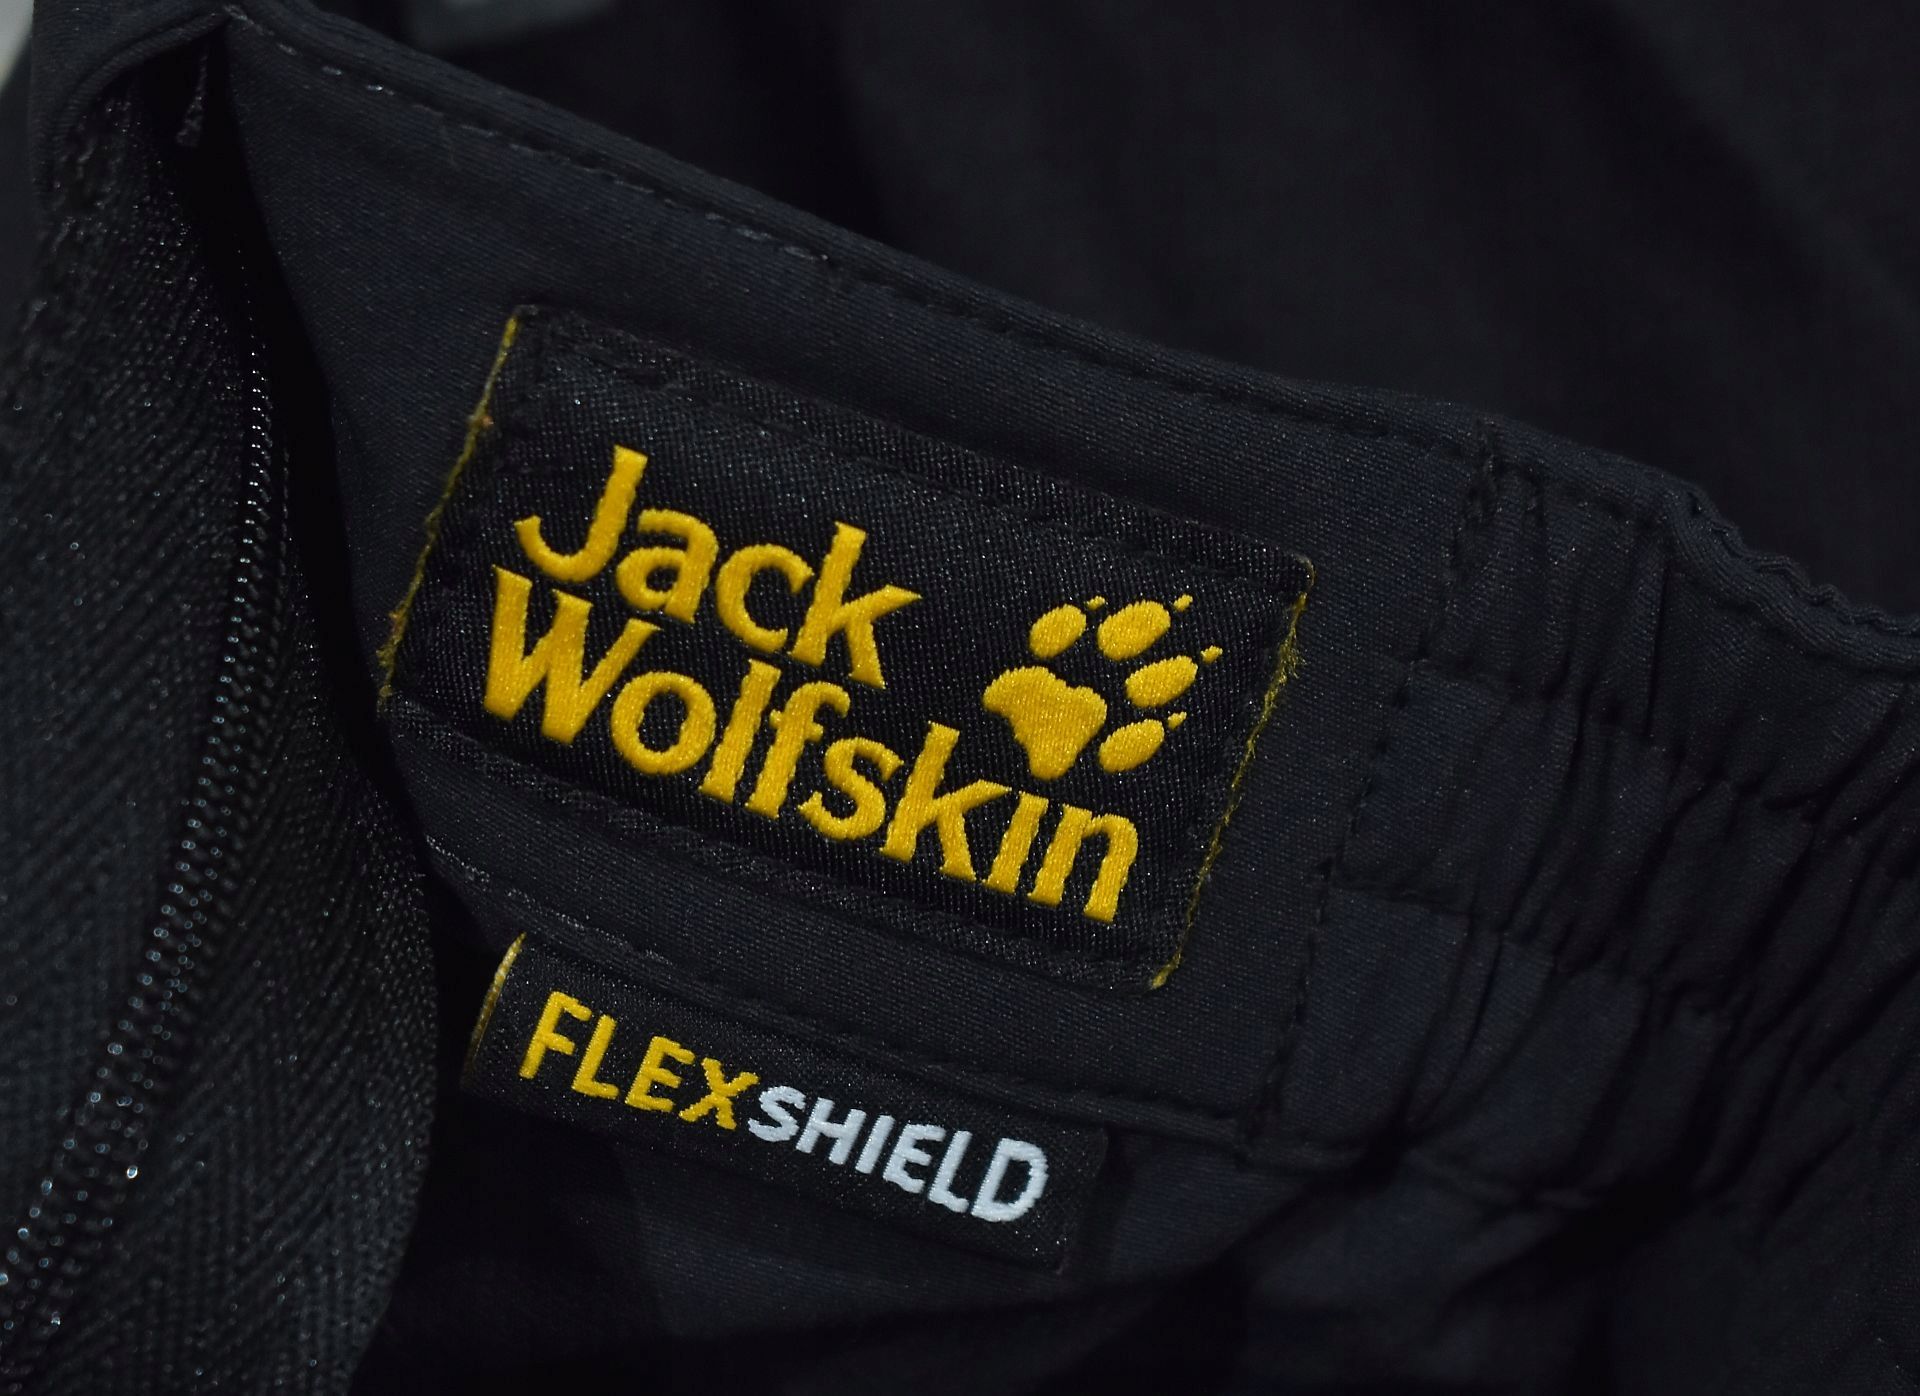 JACK WOLFSKIN Flexshield Softshell Damskie Spodnie Trekkingowe 38